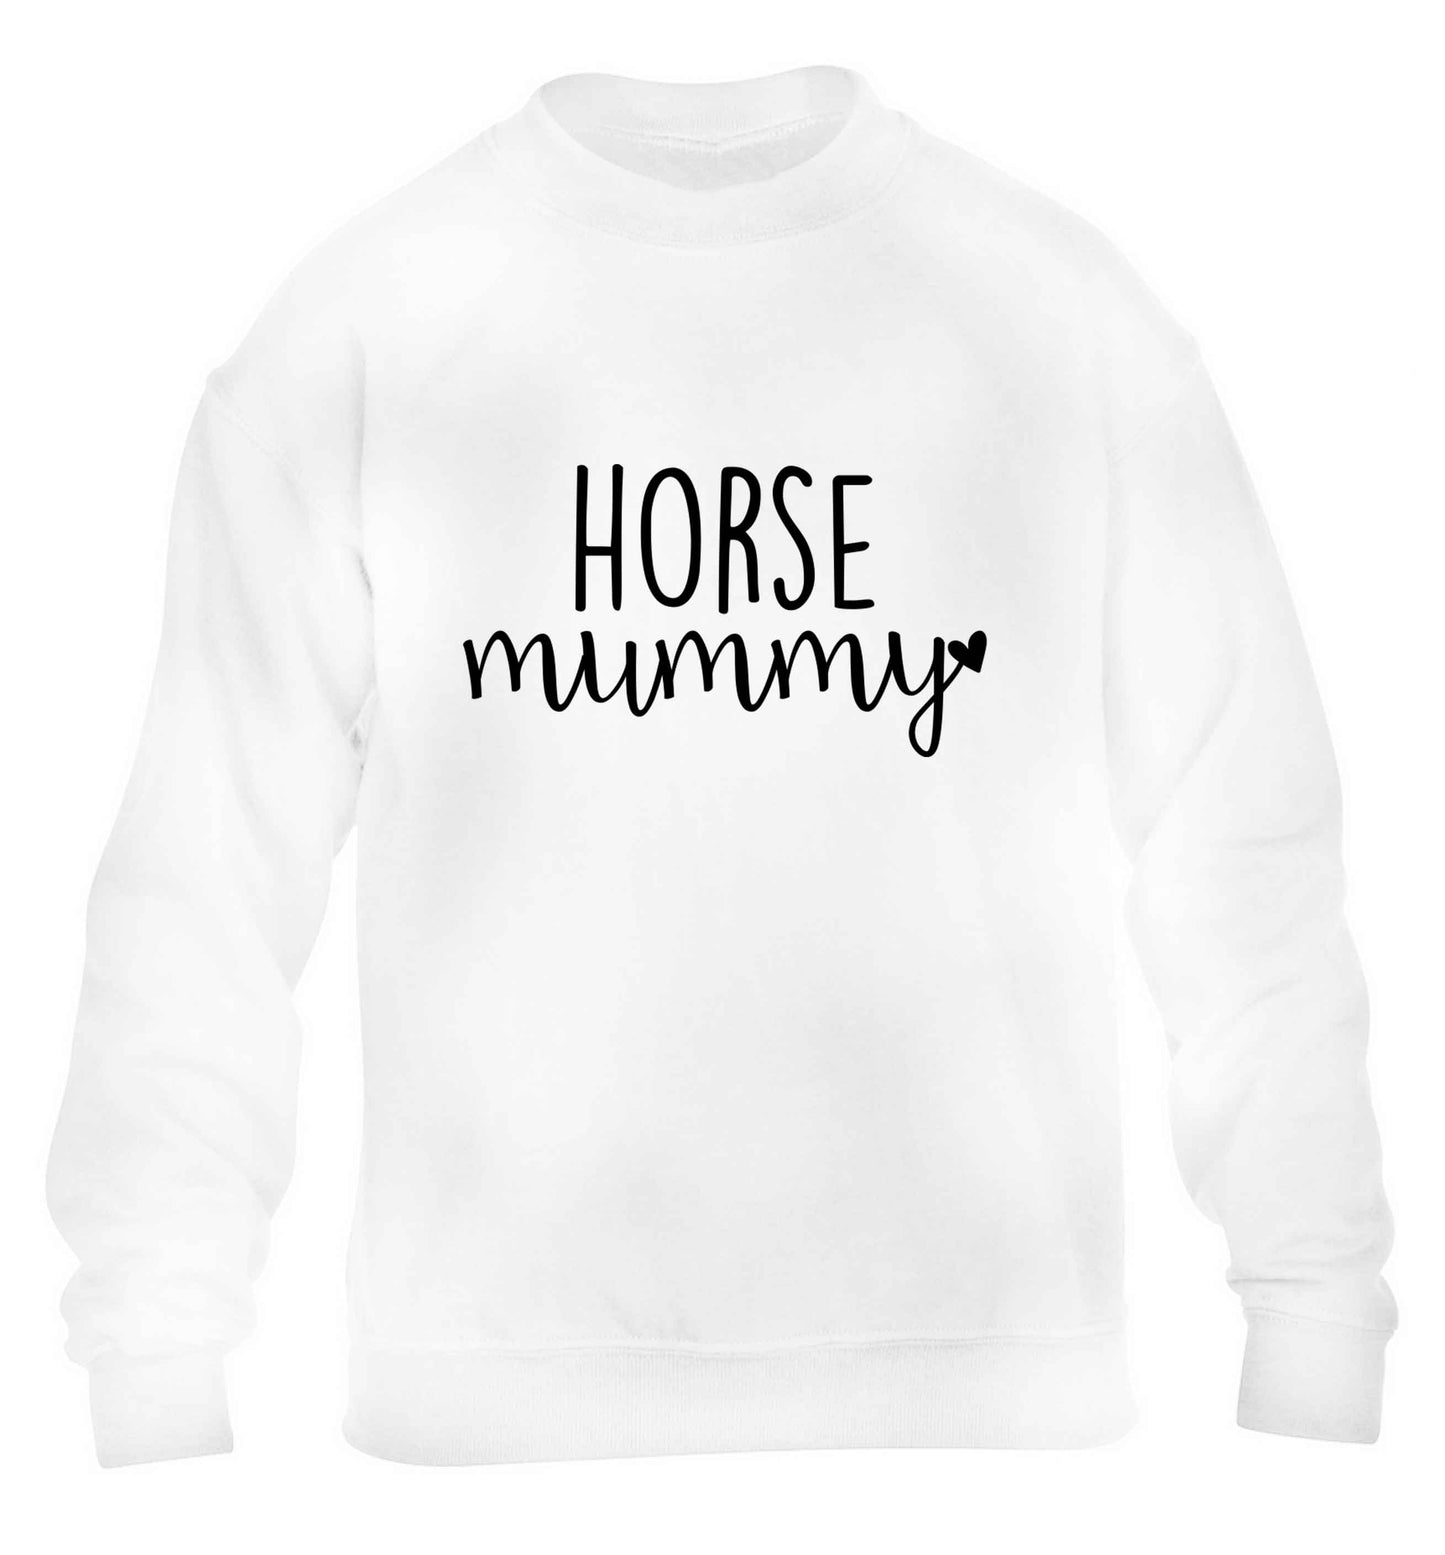 Horse mummy children's white sweater 12-13 Years